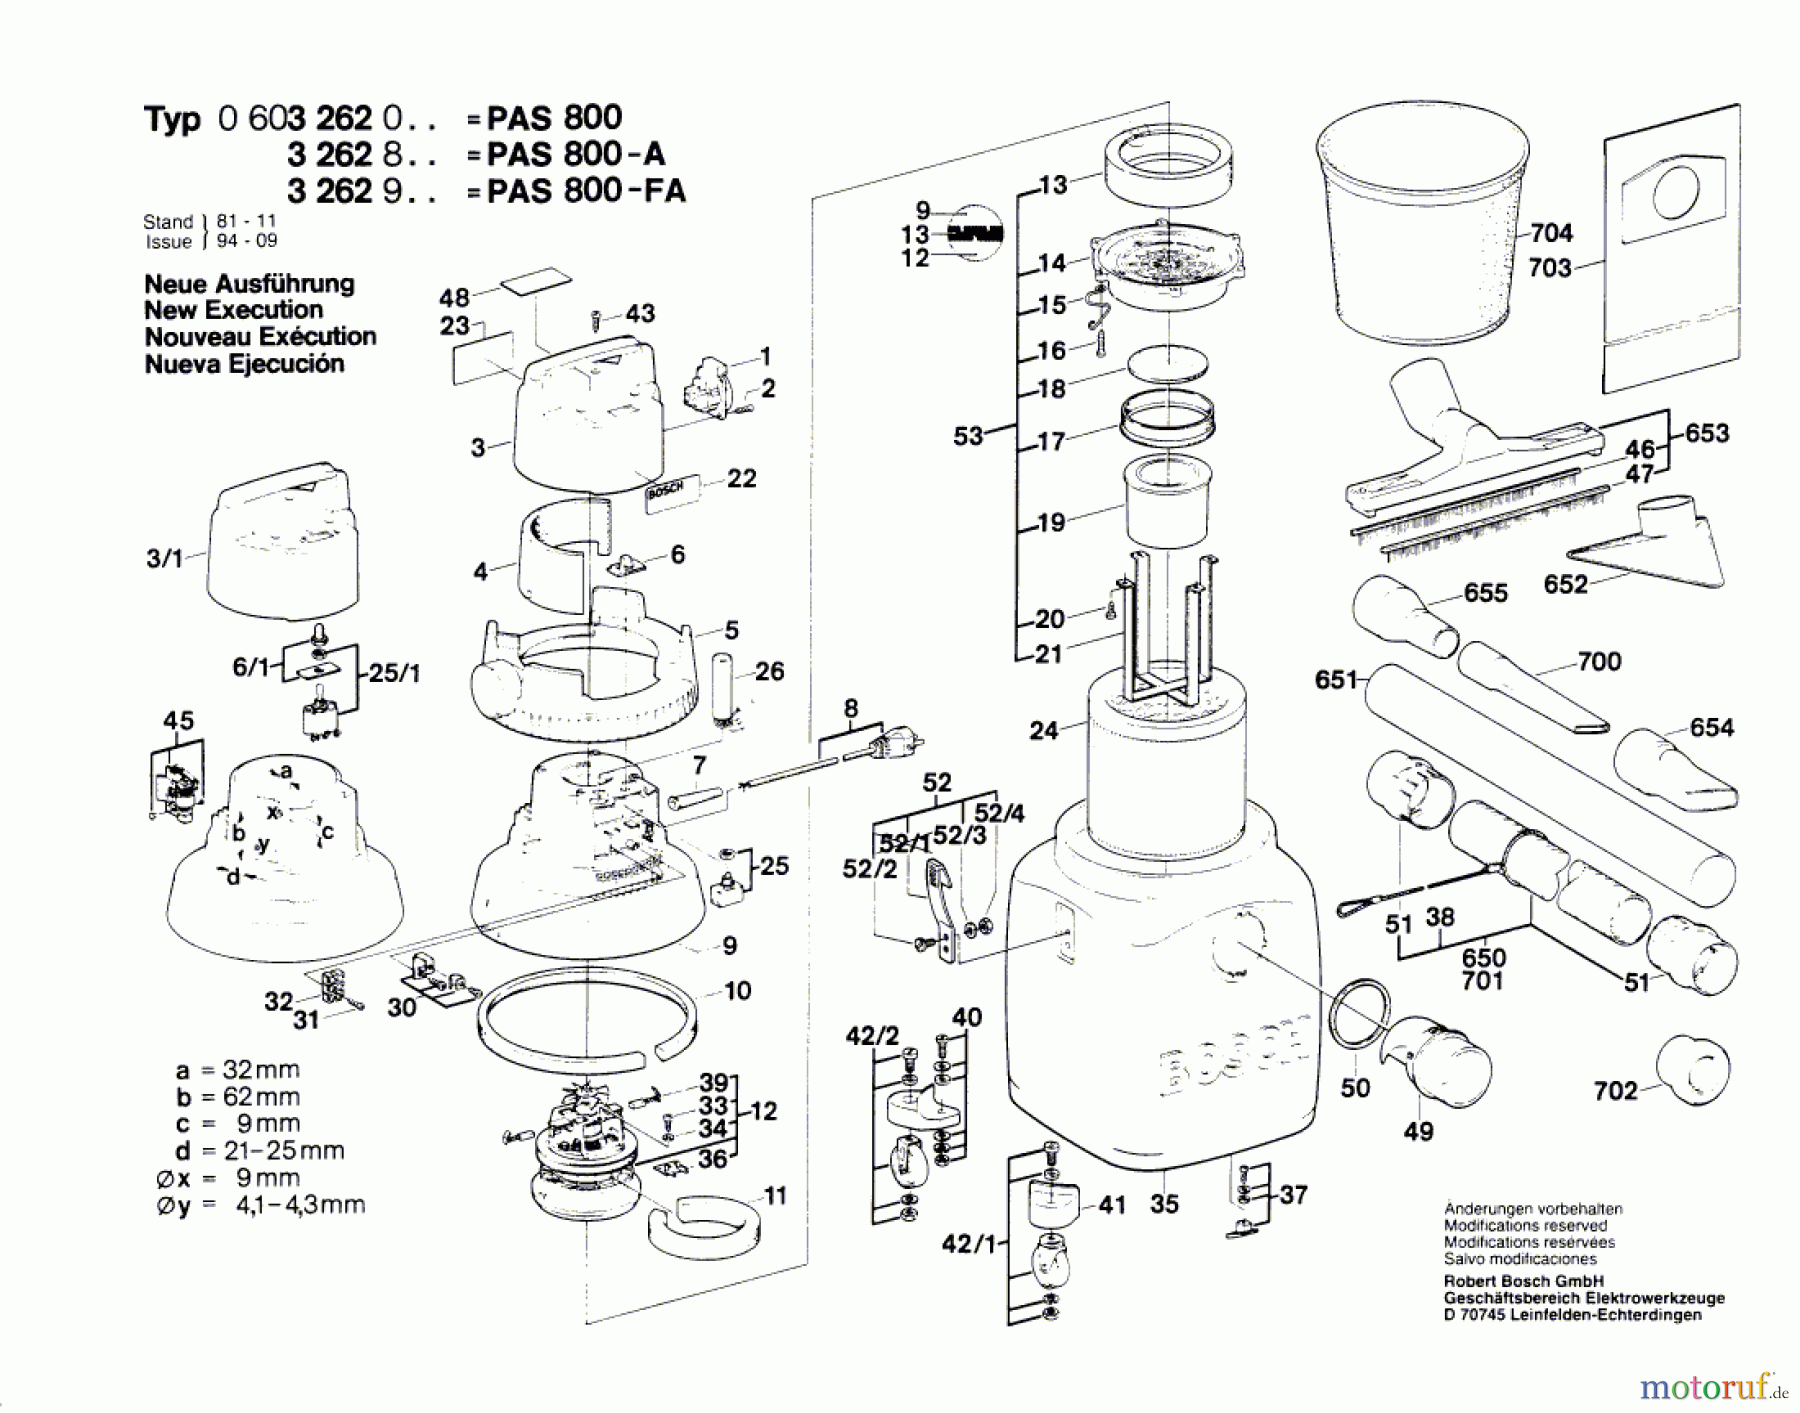  Bosch Werkzeug Allzwecksauger PAS 800 Seite 1